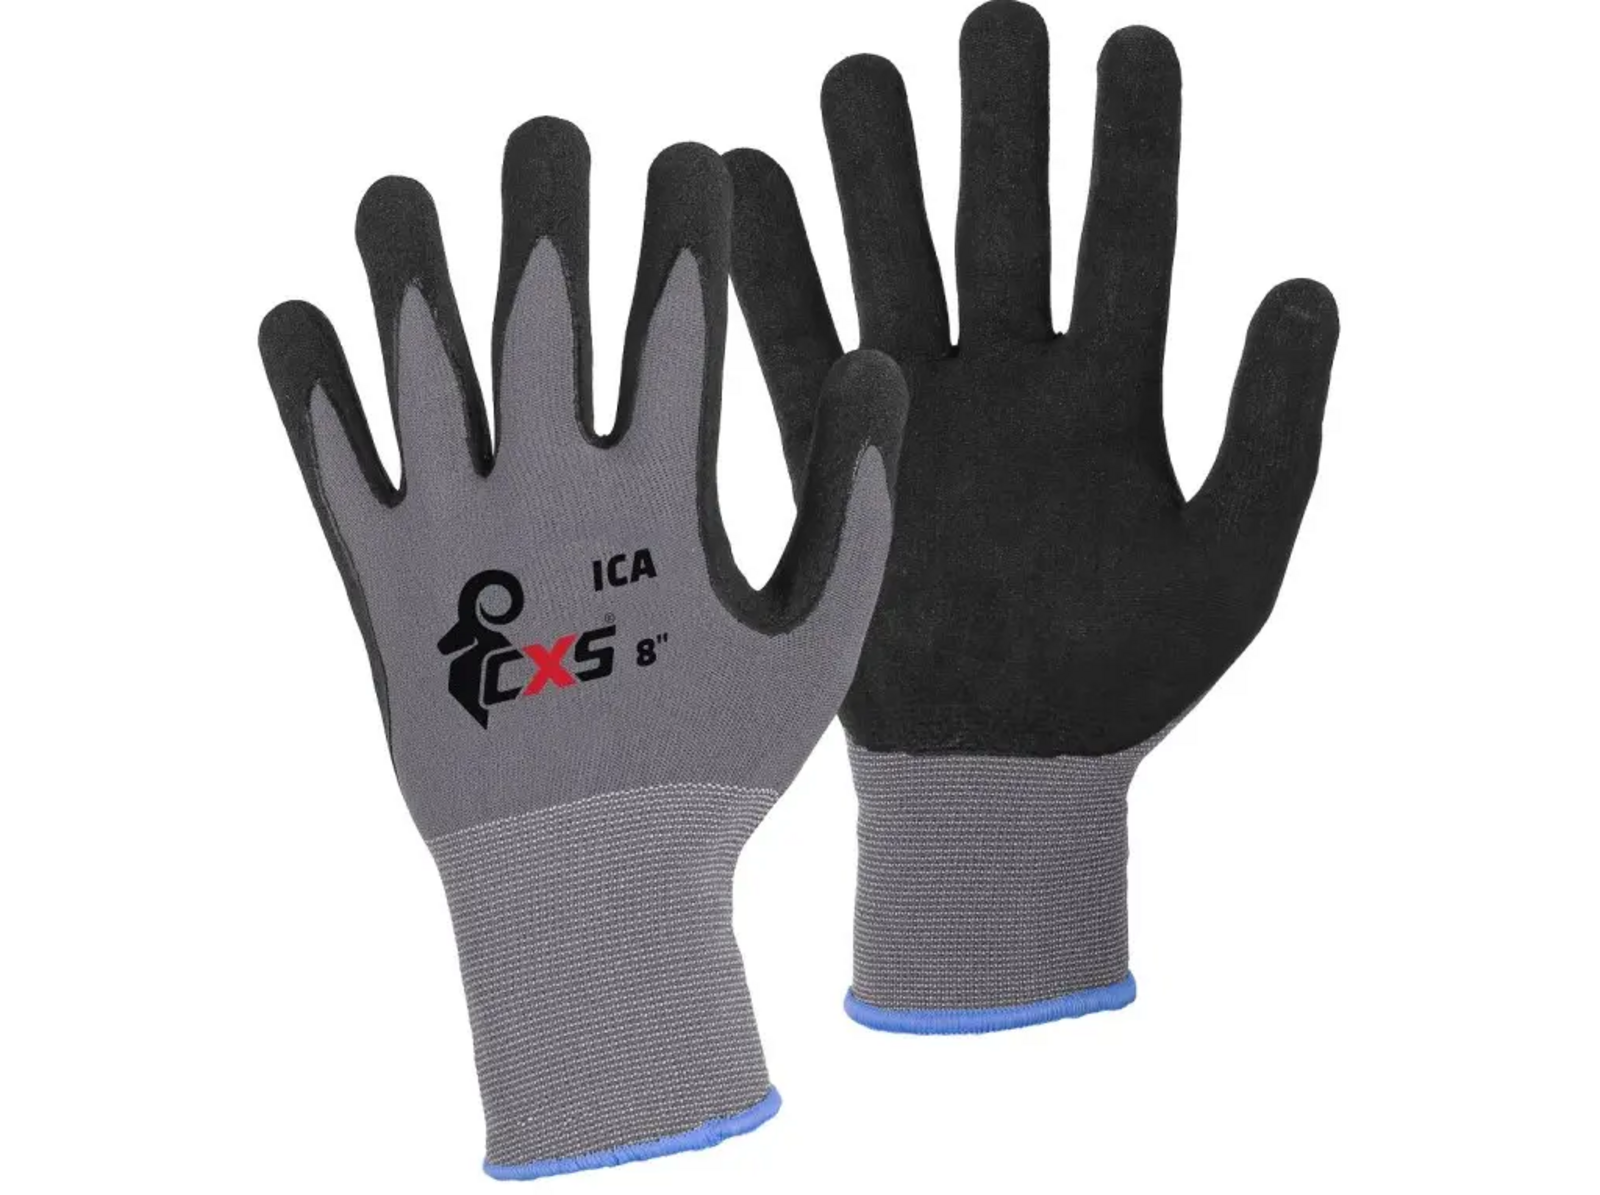 Povrstvené rukavice CXS Ica - veľkosť: 8/M, farba: sivá/čierna